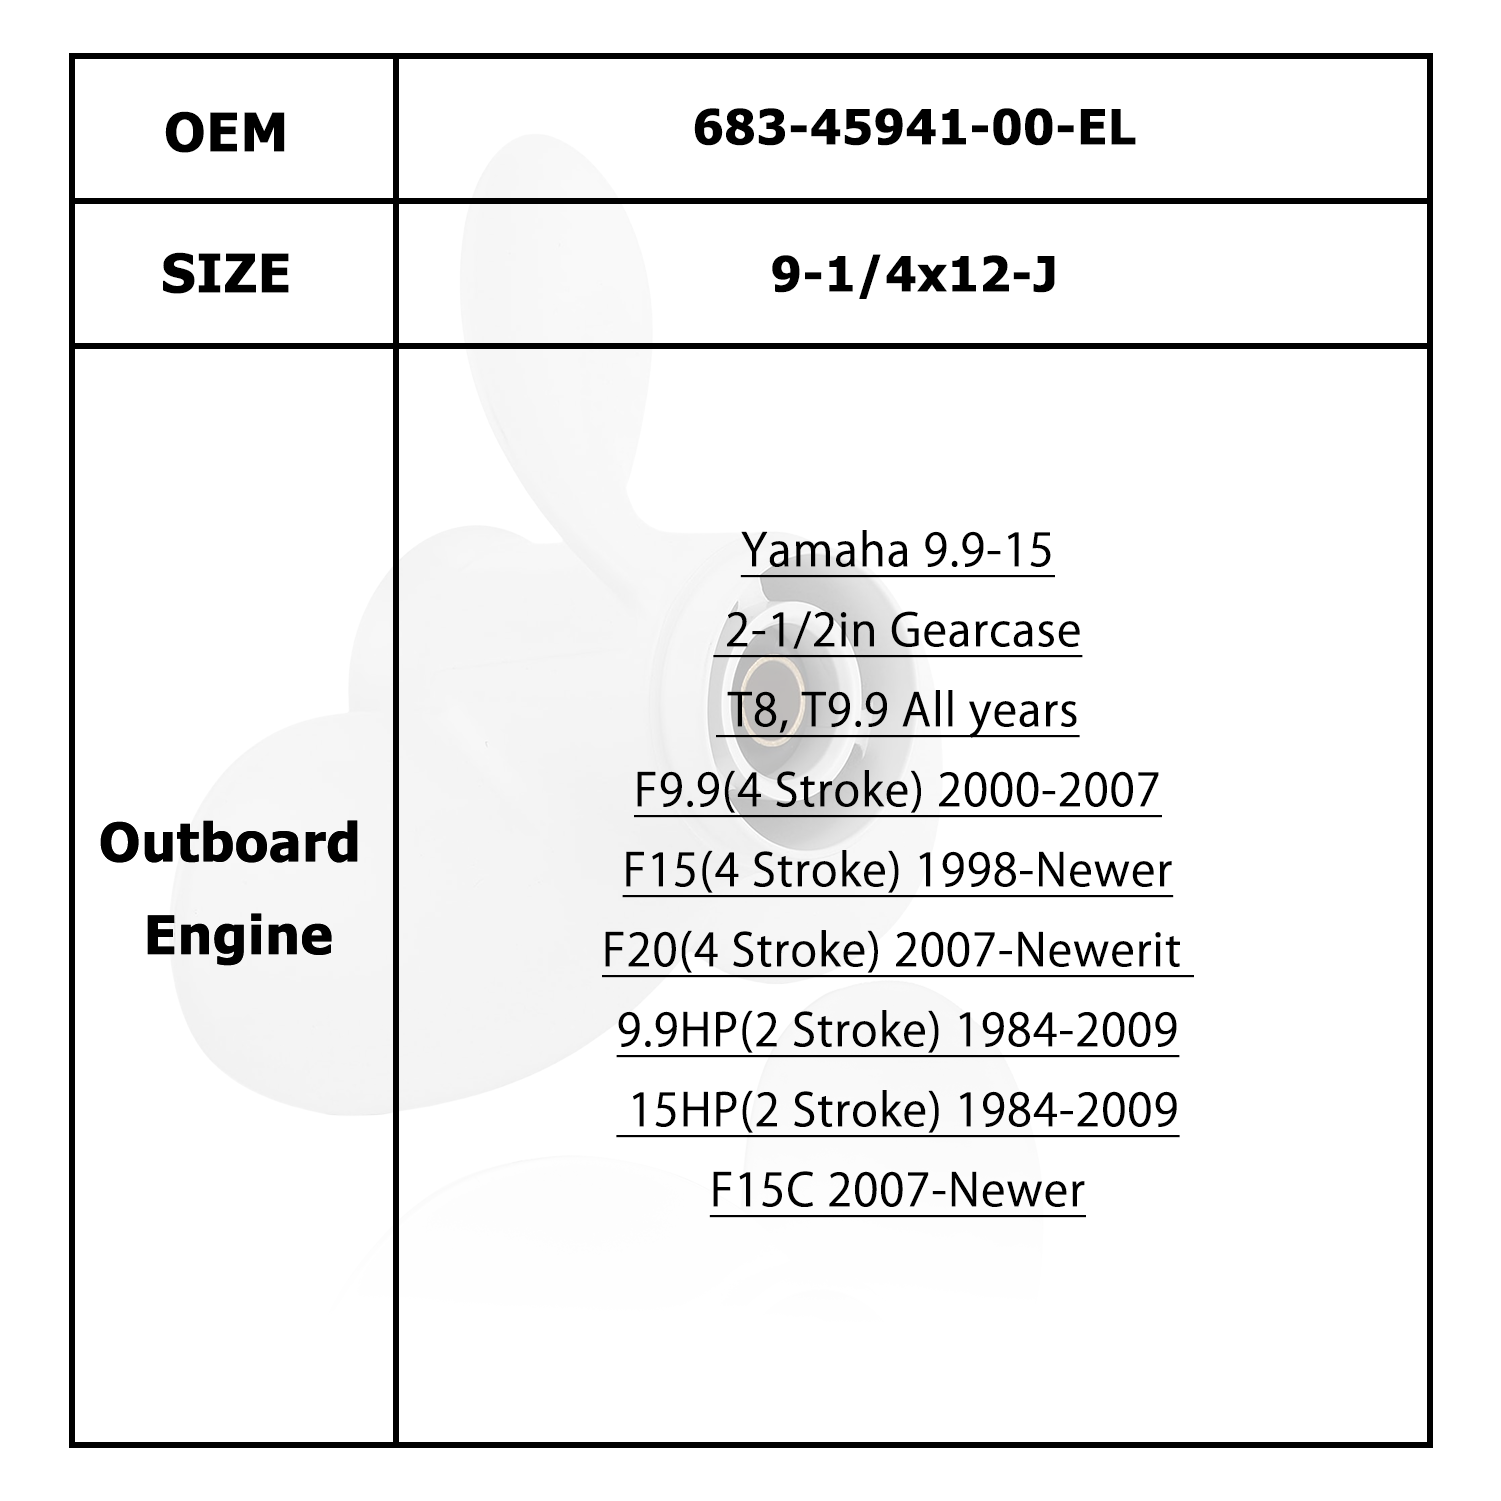 Boat Motor Propeller for YAMAHA/HIDEA 9.9-15HP 63V-45941-00-EL 63V-45943-10-EL 63V-45945-10-EL 63V-45947-00-EL 63V-45952-10-EL 683-45941-00-EL 683-45943-00-EL 683-45945-00 683-45947-00 683-45952-00-EL